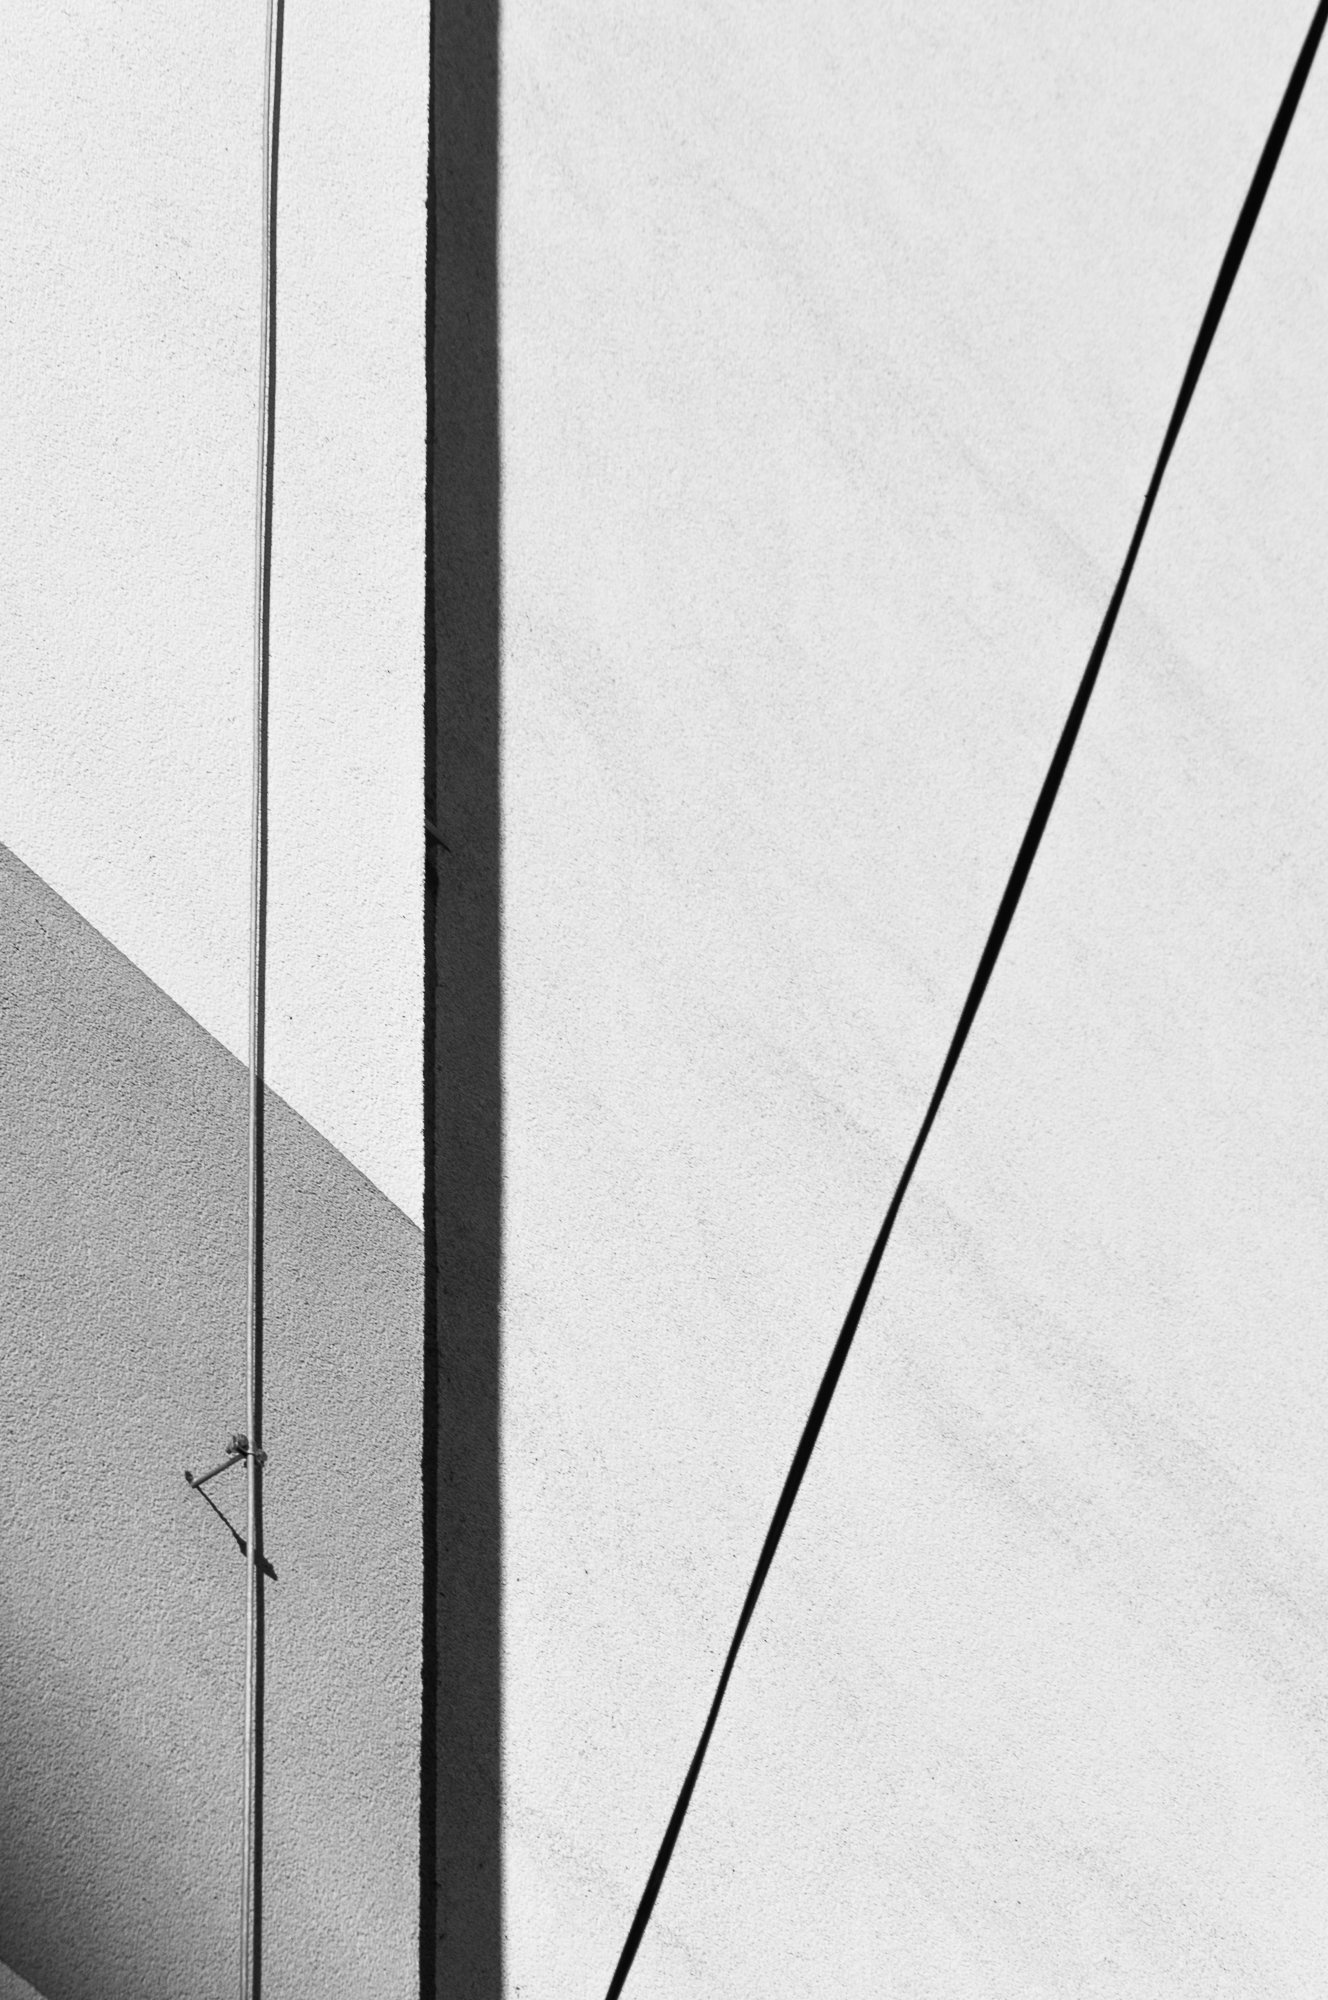 Adam Mazek Photography Warsaw (Warszawa) 2020. Post: "Invisible torch." Geometry.